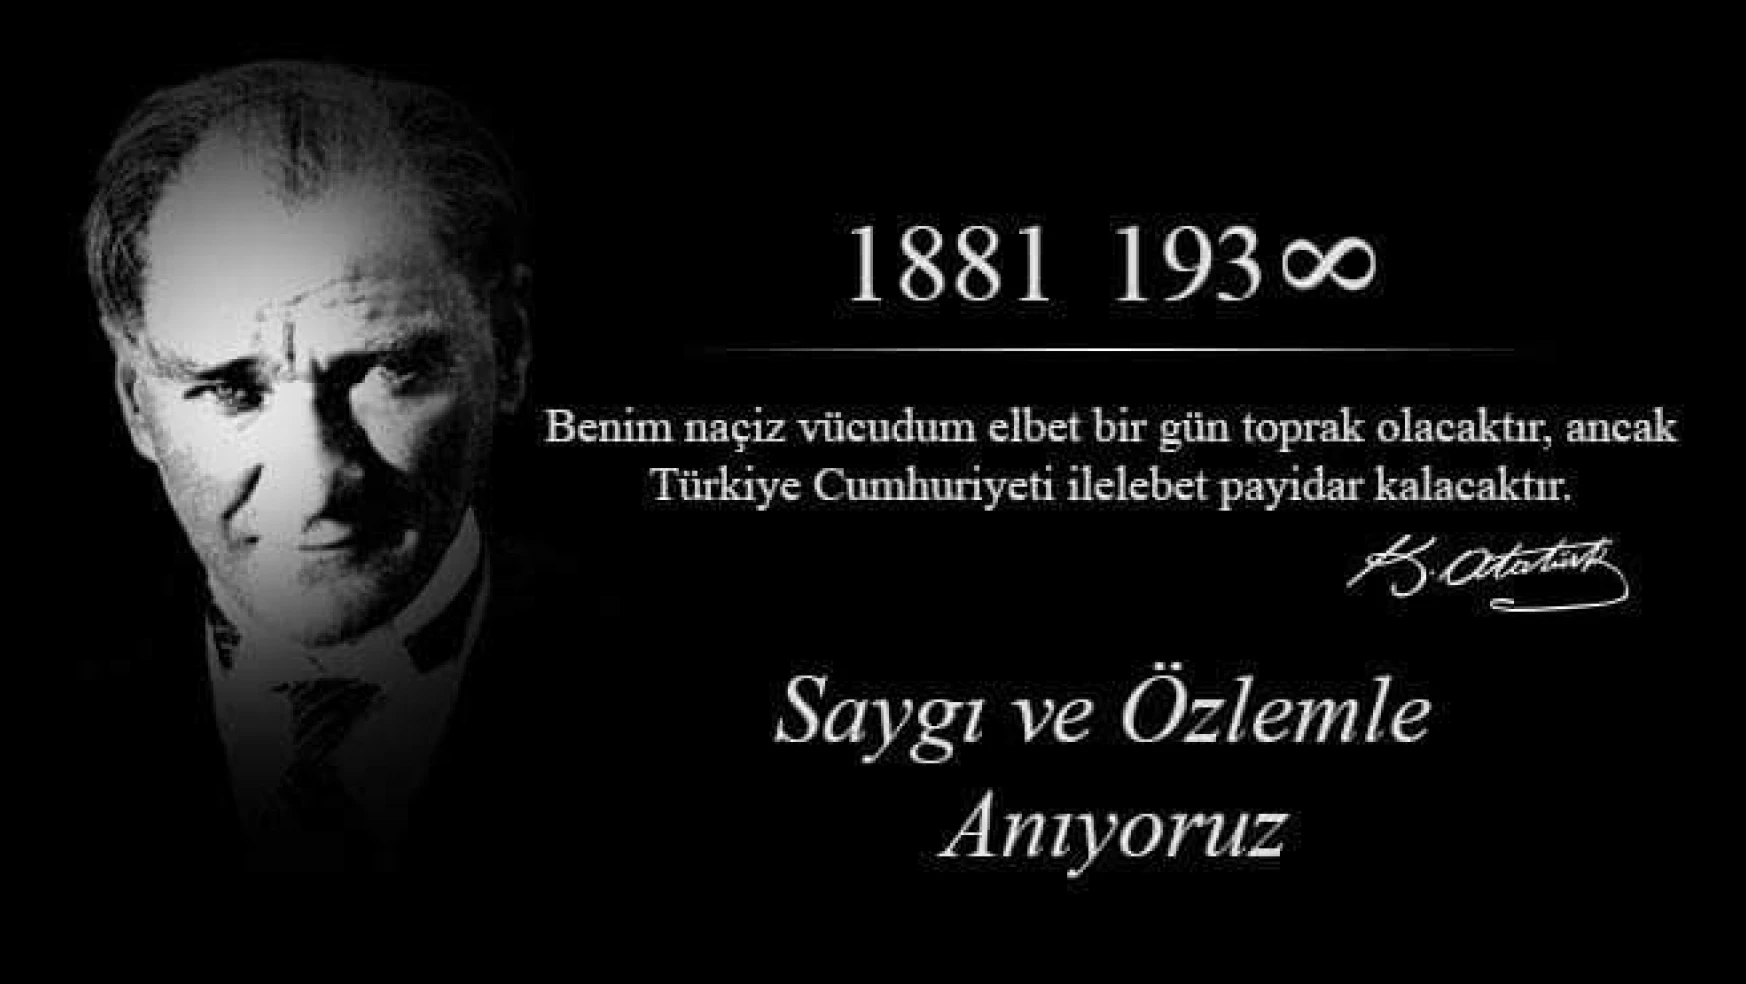 Ulu Önder Mustafa Kemal Atatürk'ü saygıyla anıyoruz